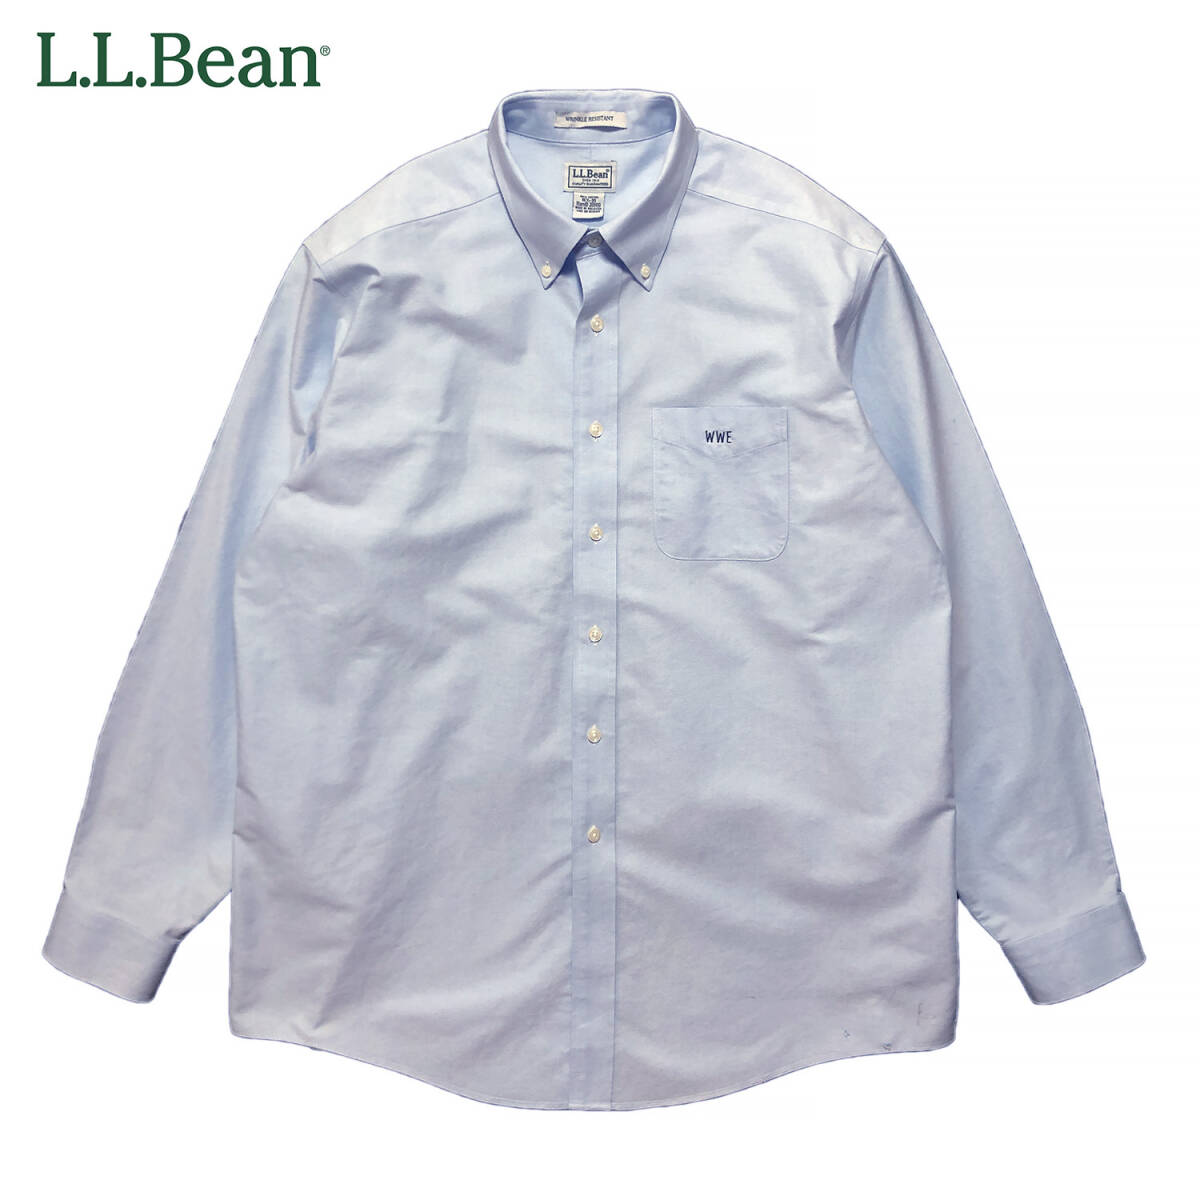 USA 古着 L.L.Bean アウトドア オックスフォード コットン BDシャツ 長袖シャツ メンズXL相当 ブルー WWE 刺繍 LLビーン 中古 BG0714